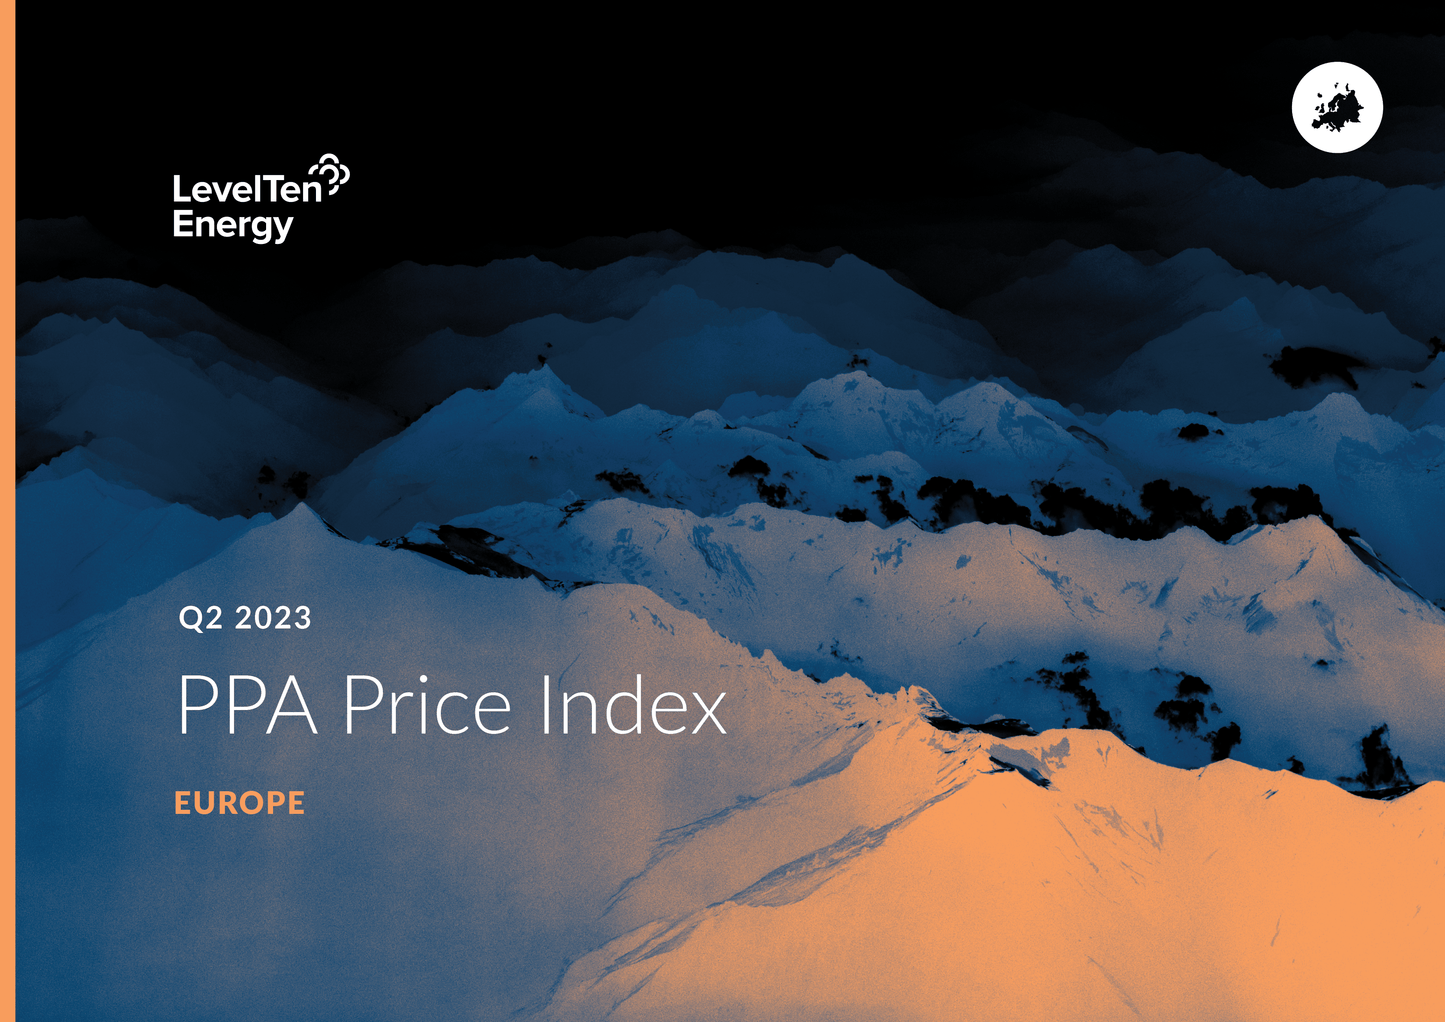 Q2 2023 PPA Price Index - Europe